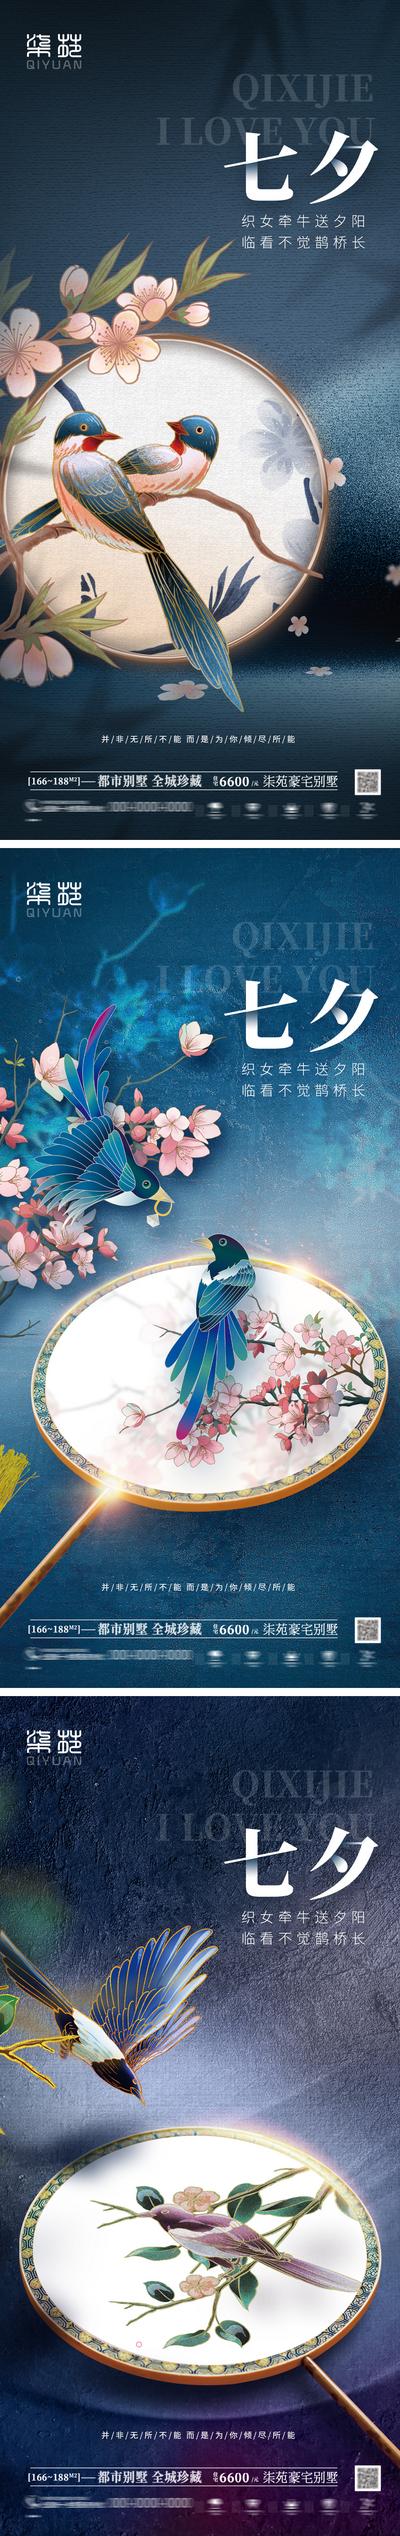 南门网 海报 地产 中国传统节日 七夕 情人节 喜鹊 花 扇子 国潮 中国风 插画 手绘 系列